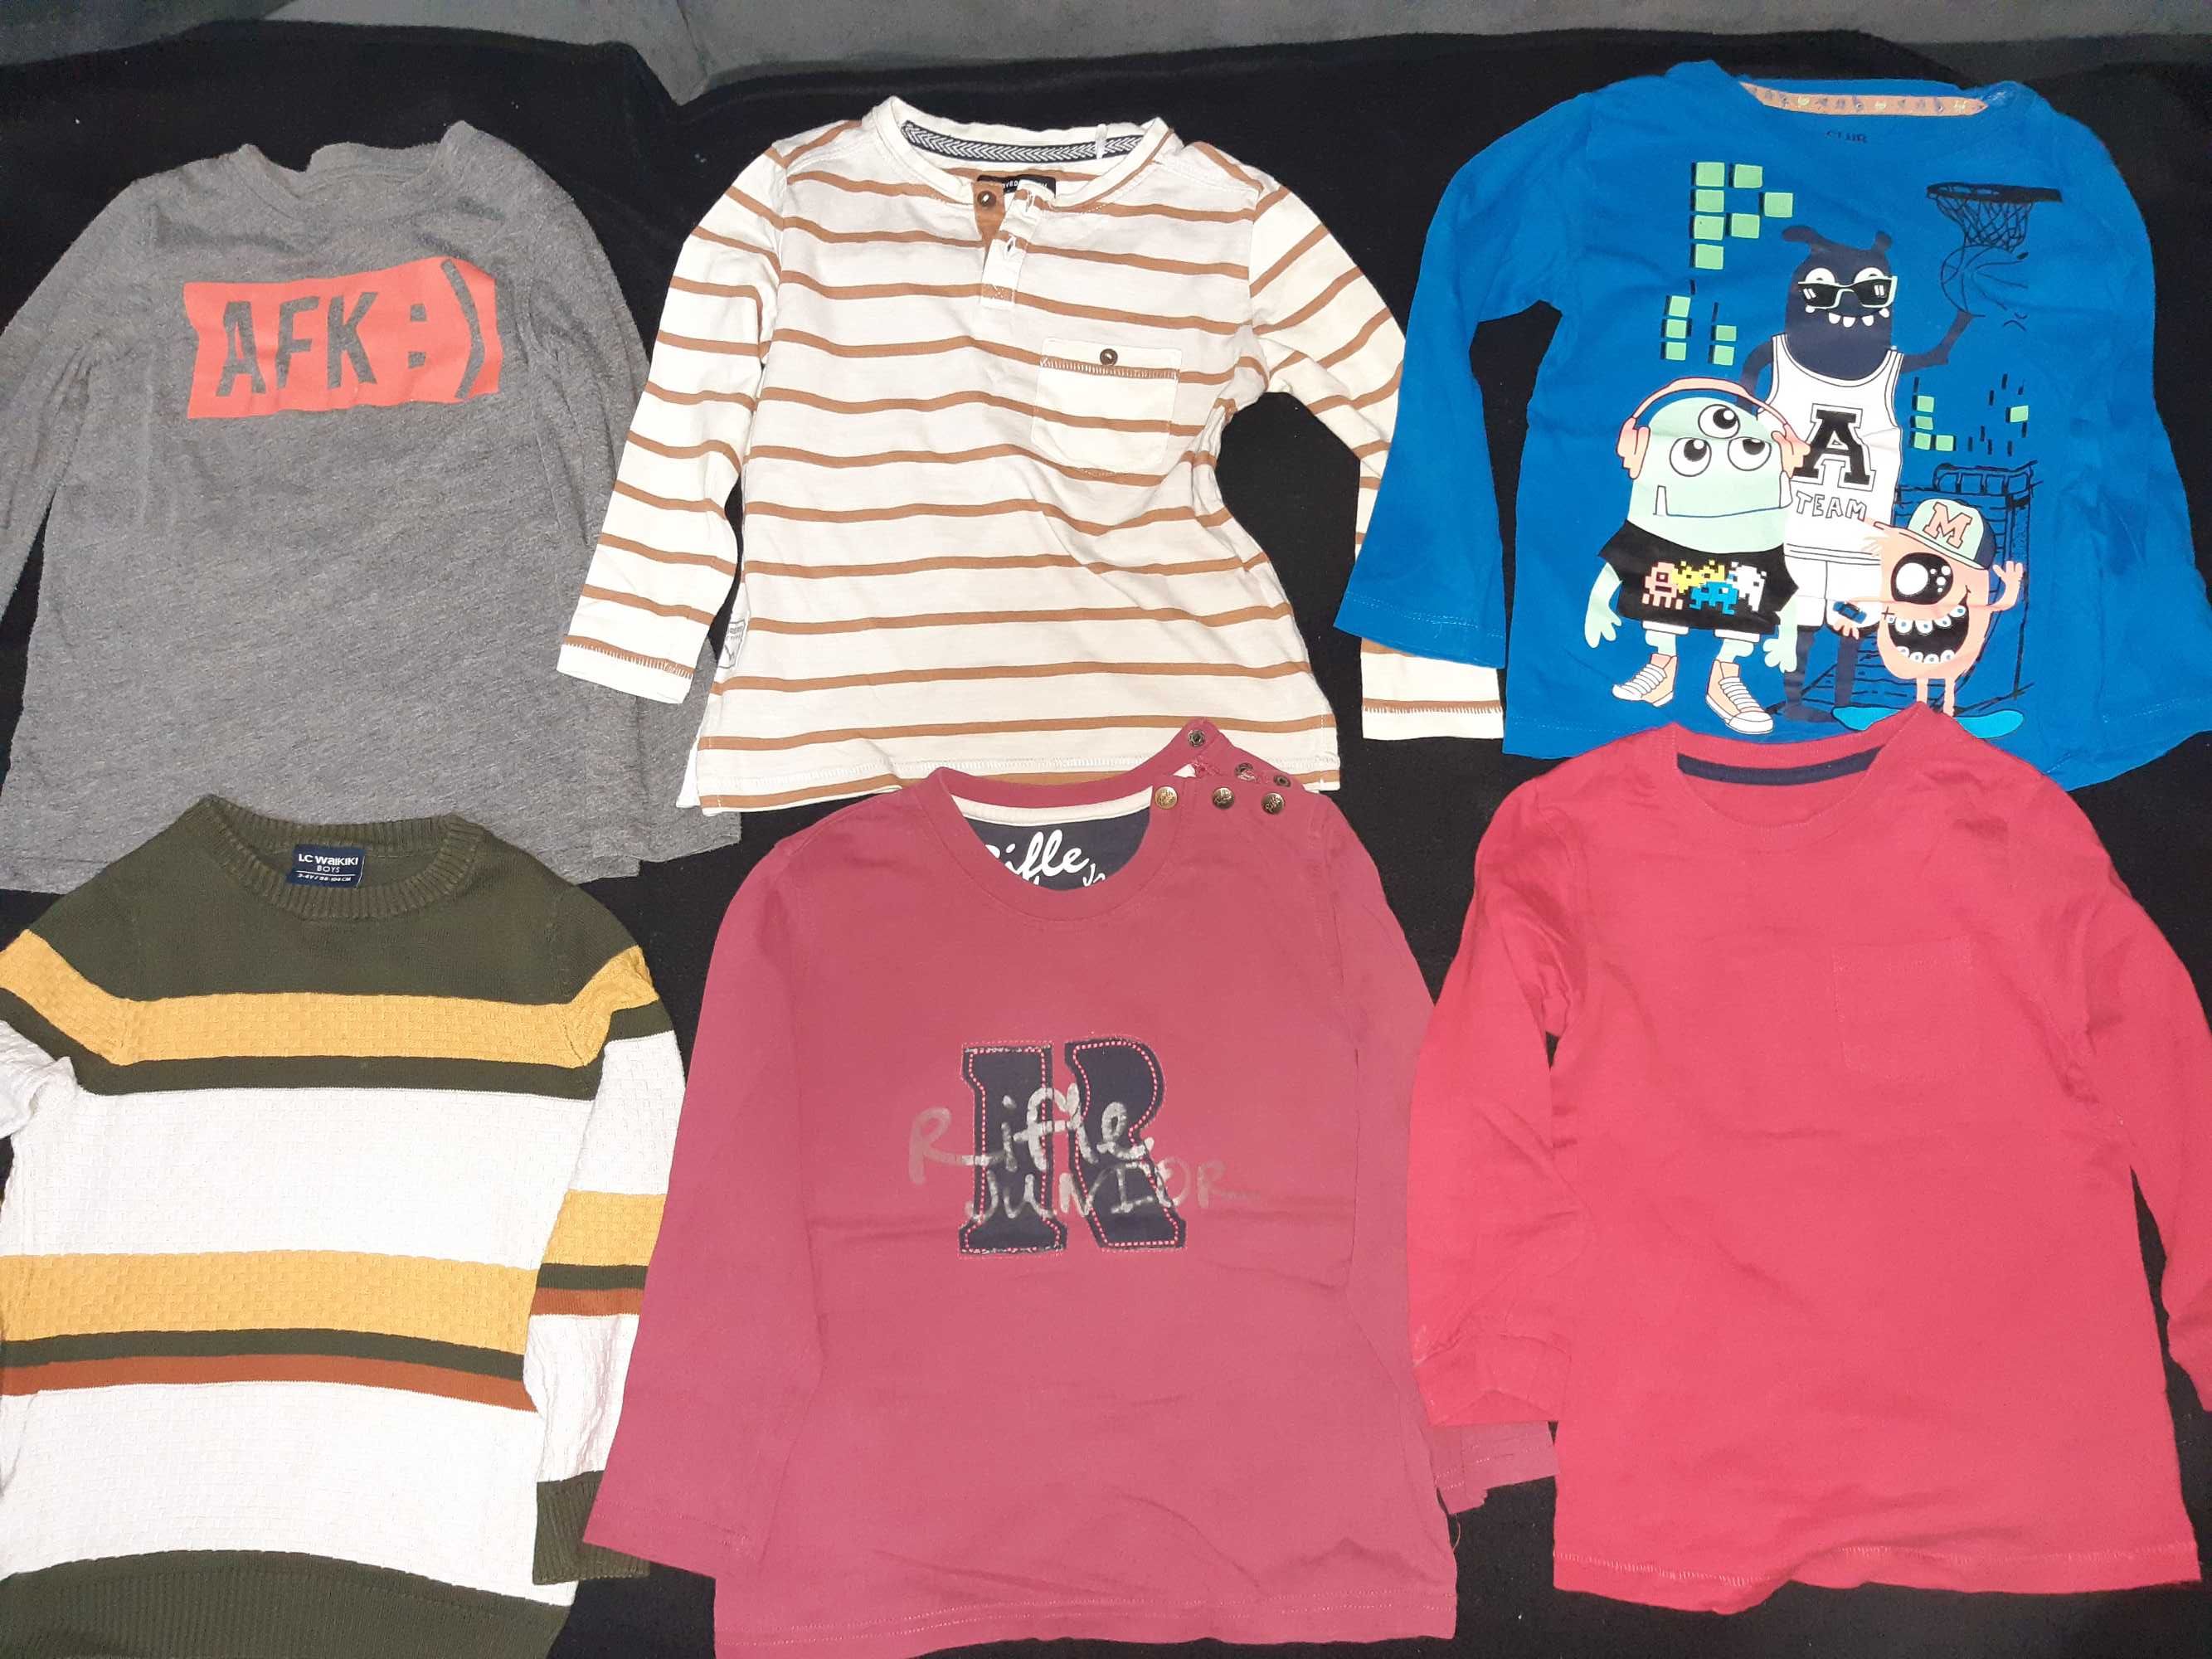 Bluzoane, pulovere, pantaloni băiat cu vârsta de 3-4 ani